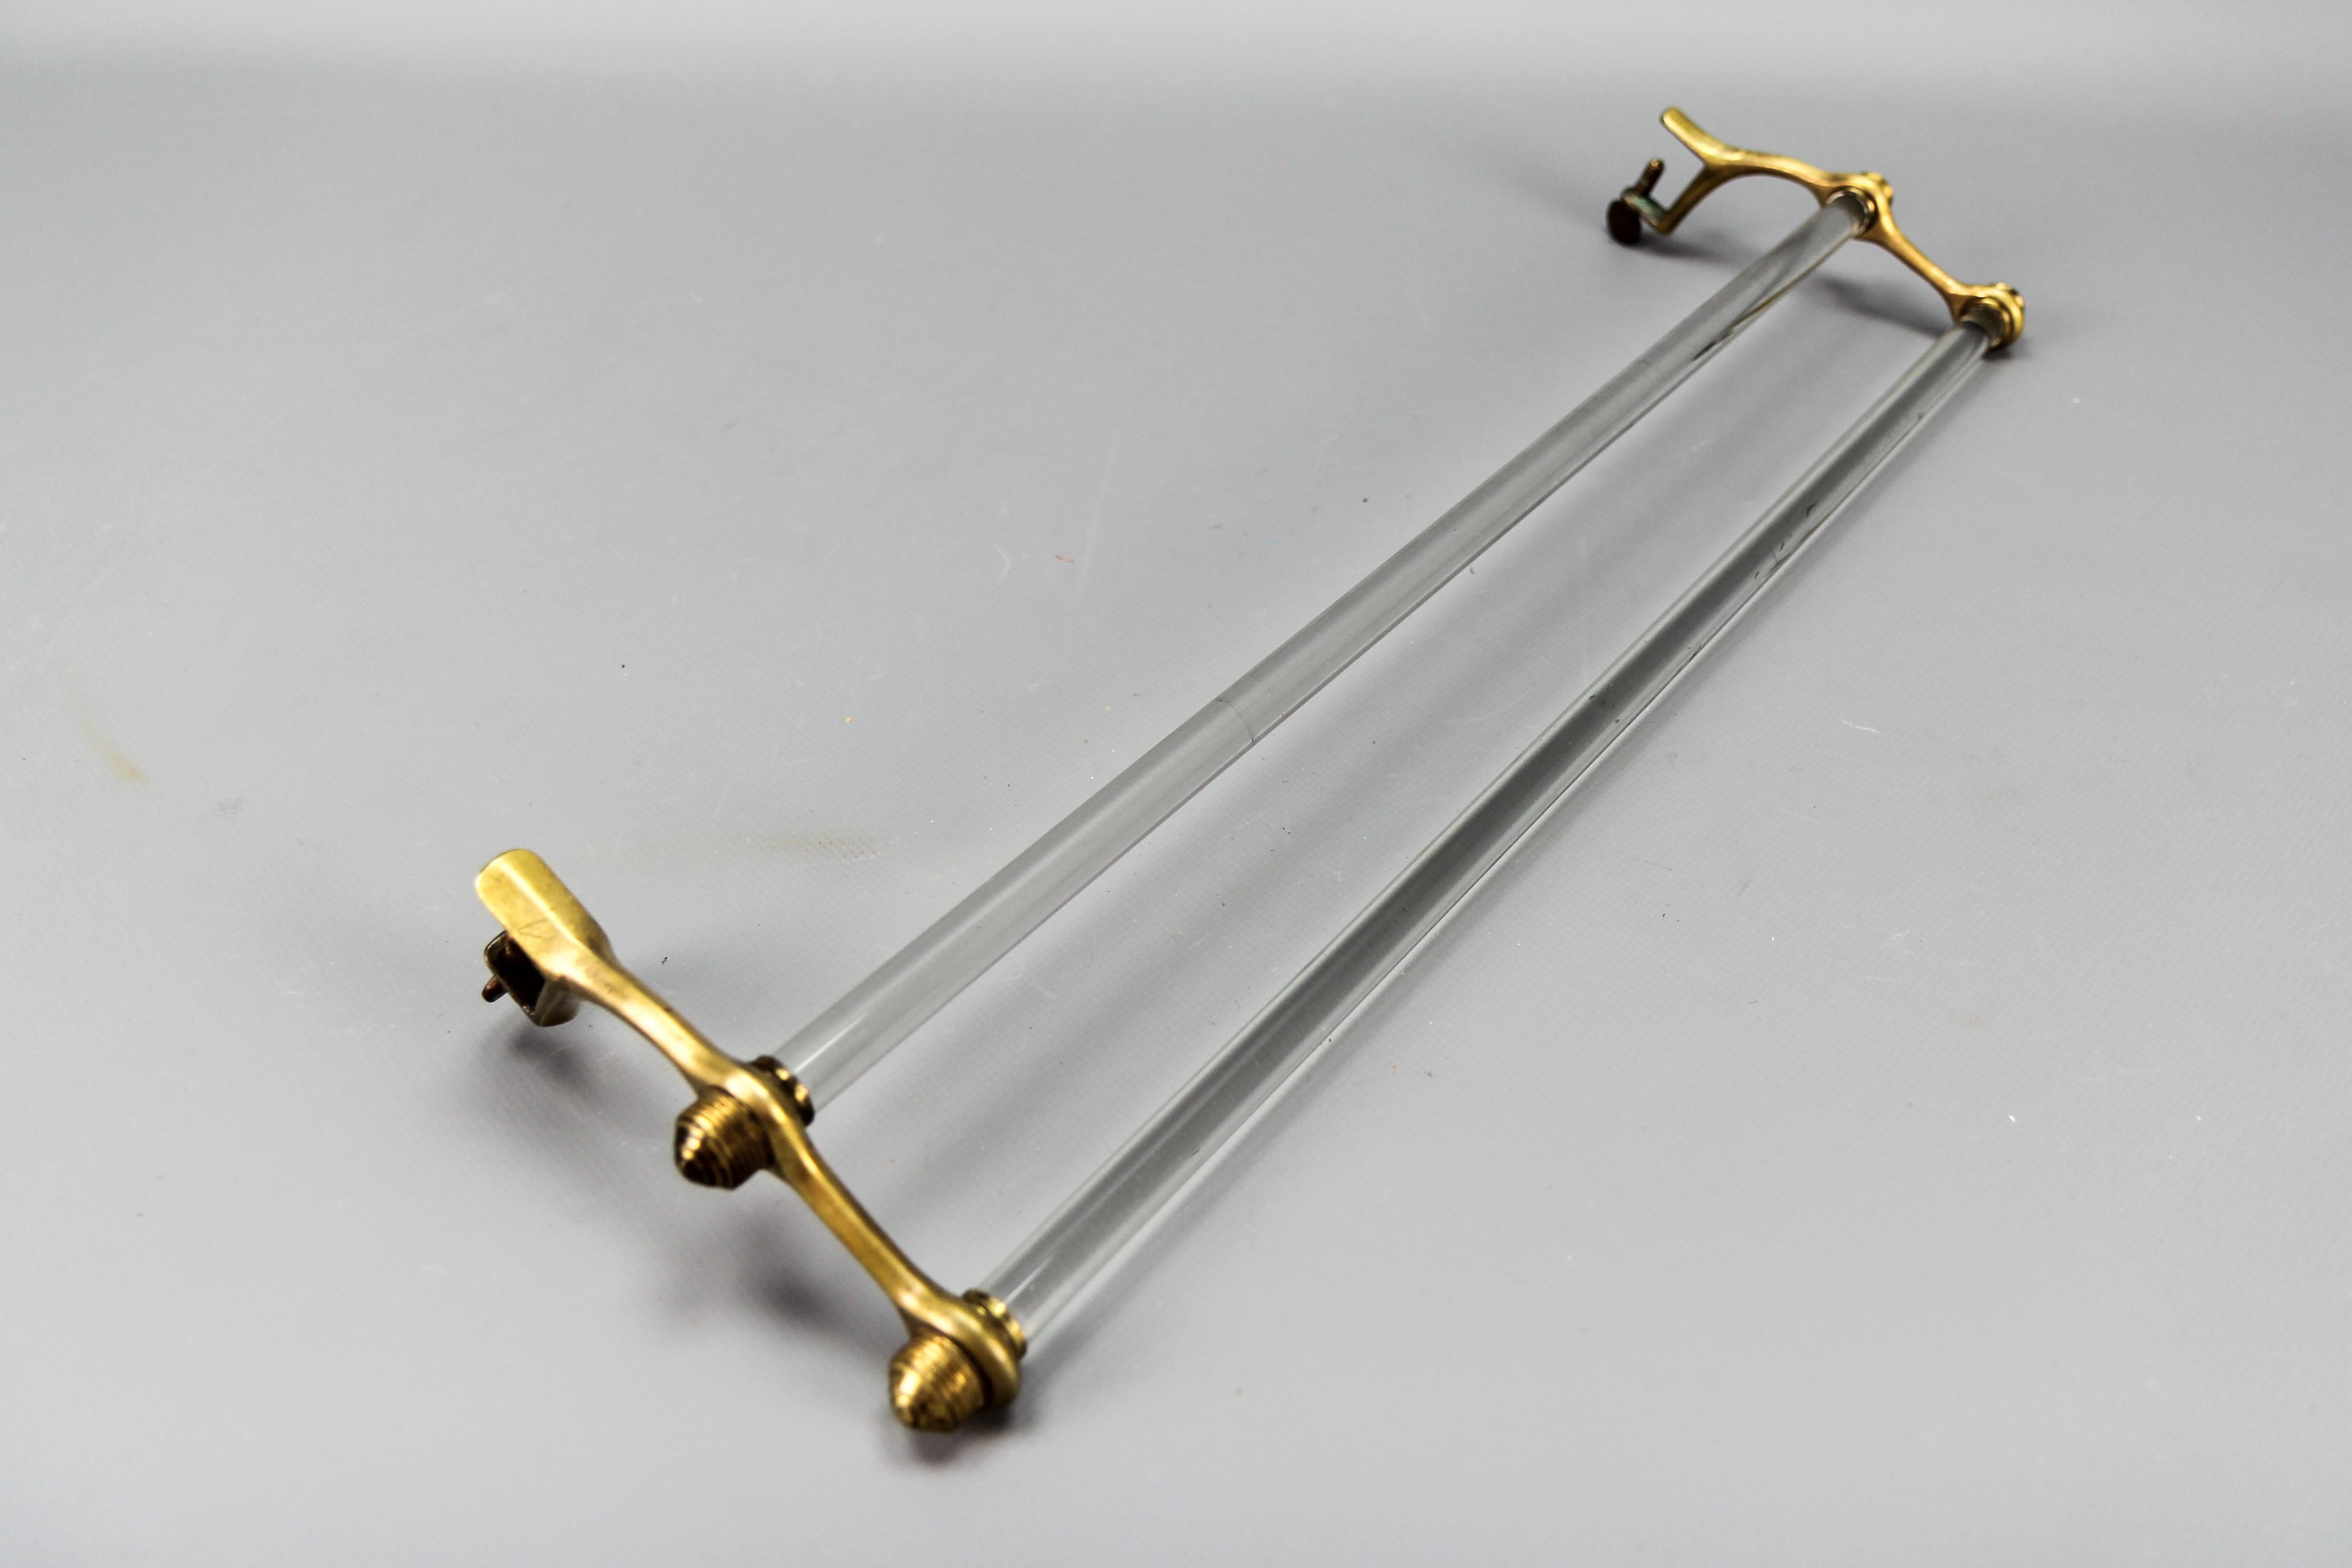 Französischer Art-Déco-Handtuchhalter aus Doppelglas mit Messingenden, 1930er Jahre.
Ein eleganter, doppelter Glastuchhalter aus der Art déco-Zeit mit Messingenden. Die U-förmigen Krallen am Ende der Messingteile haben am unteren Ende ein